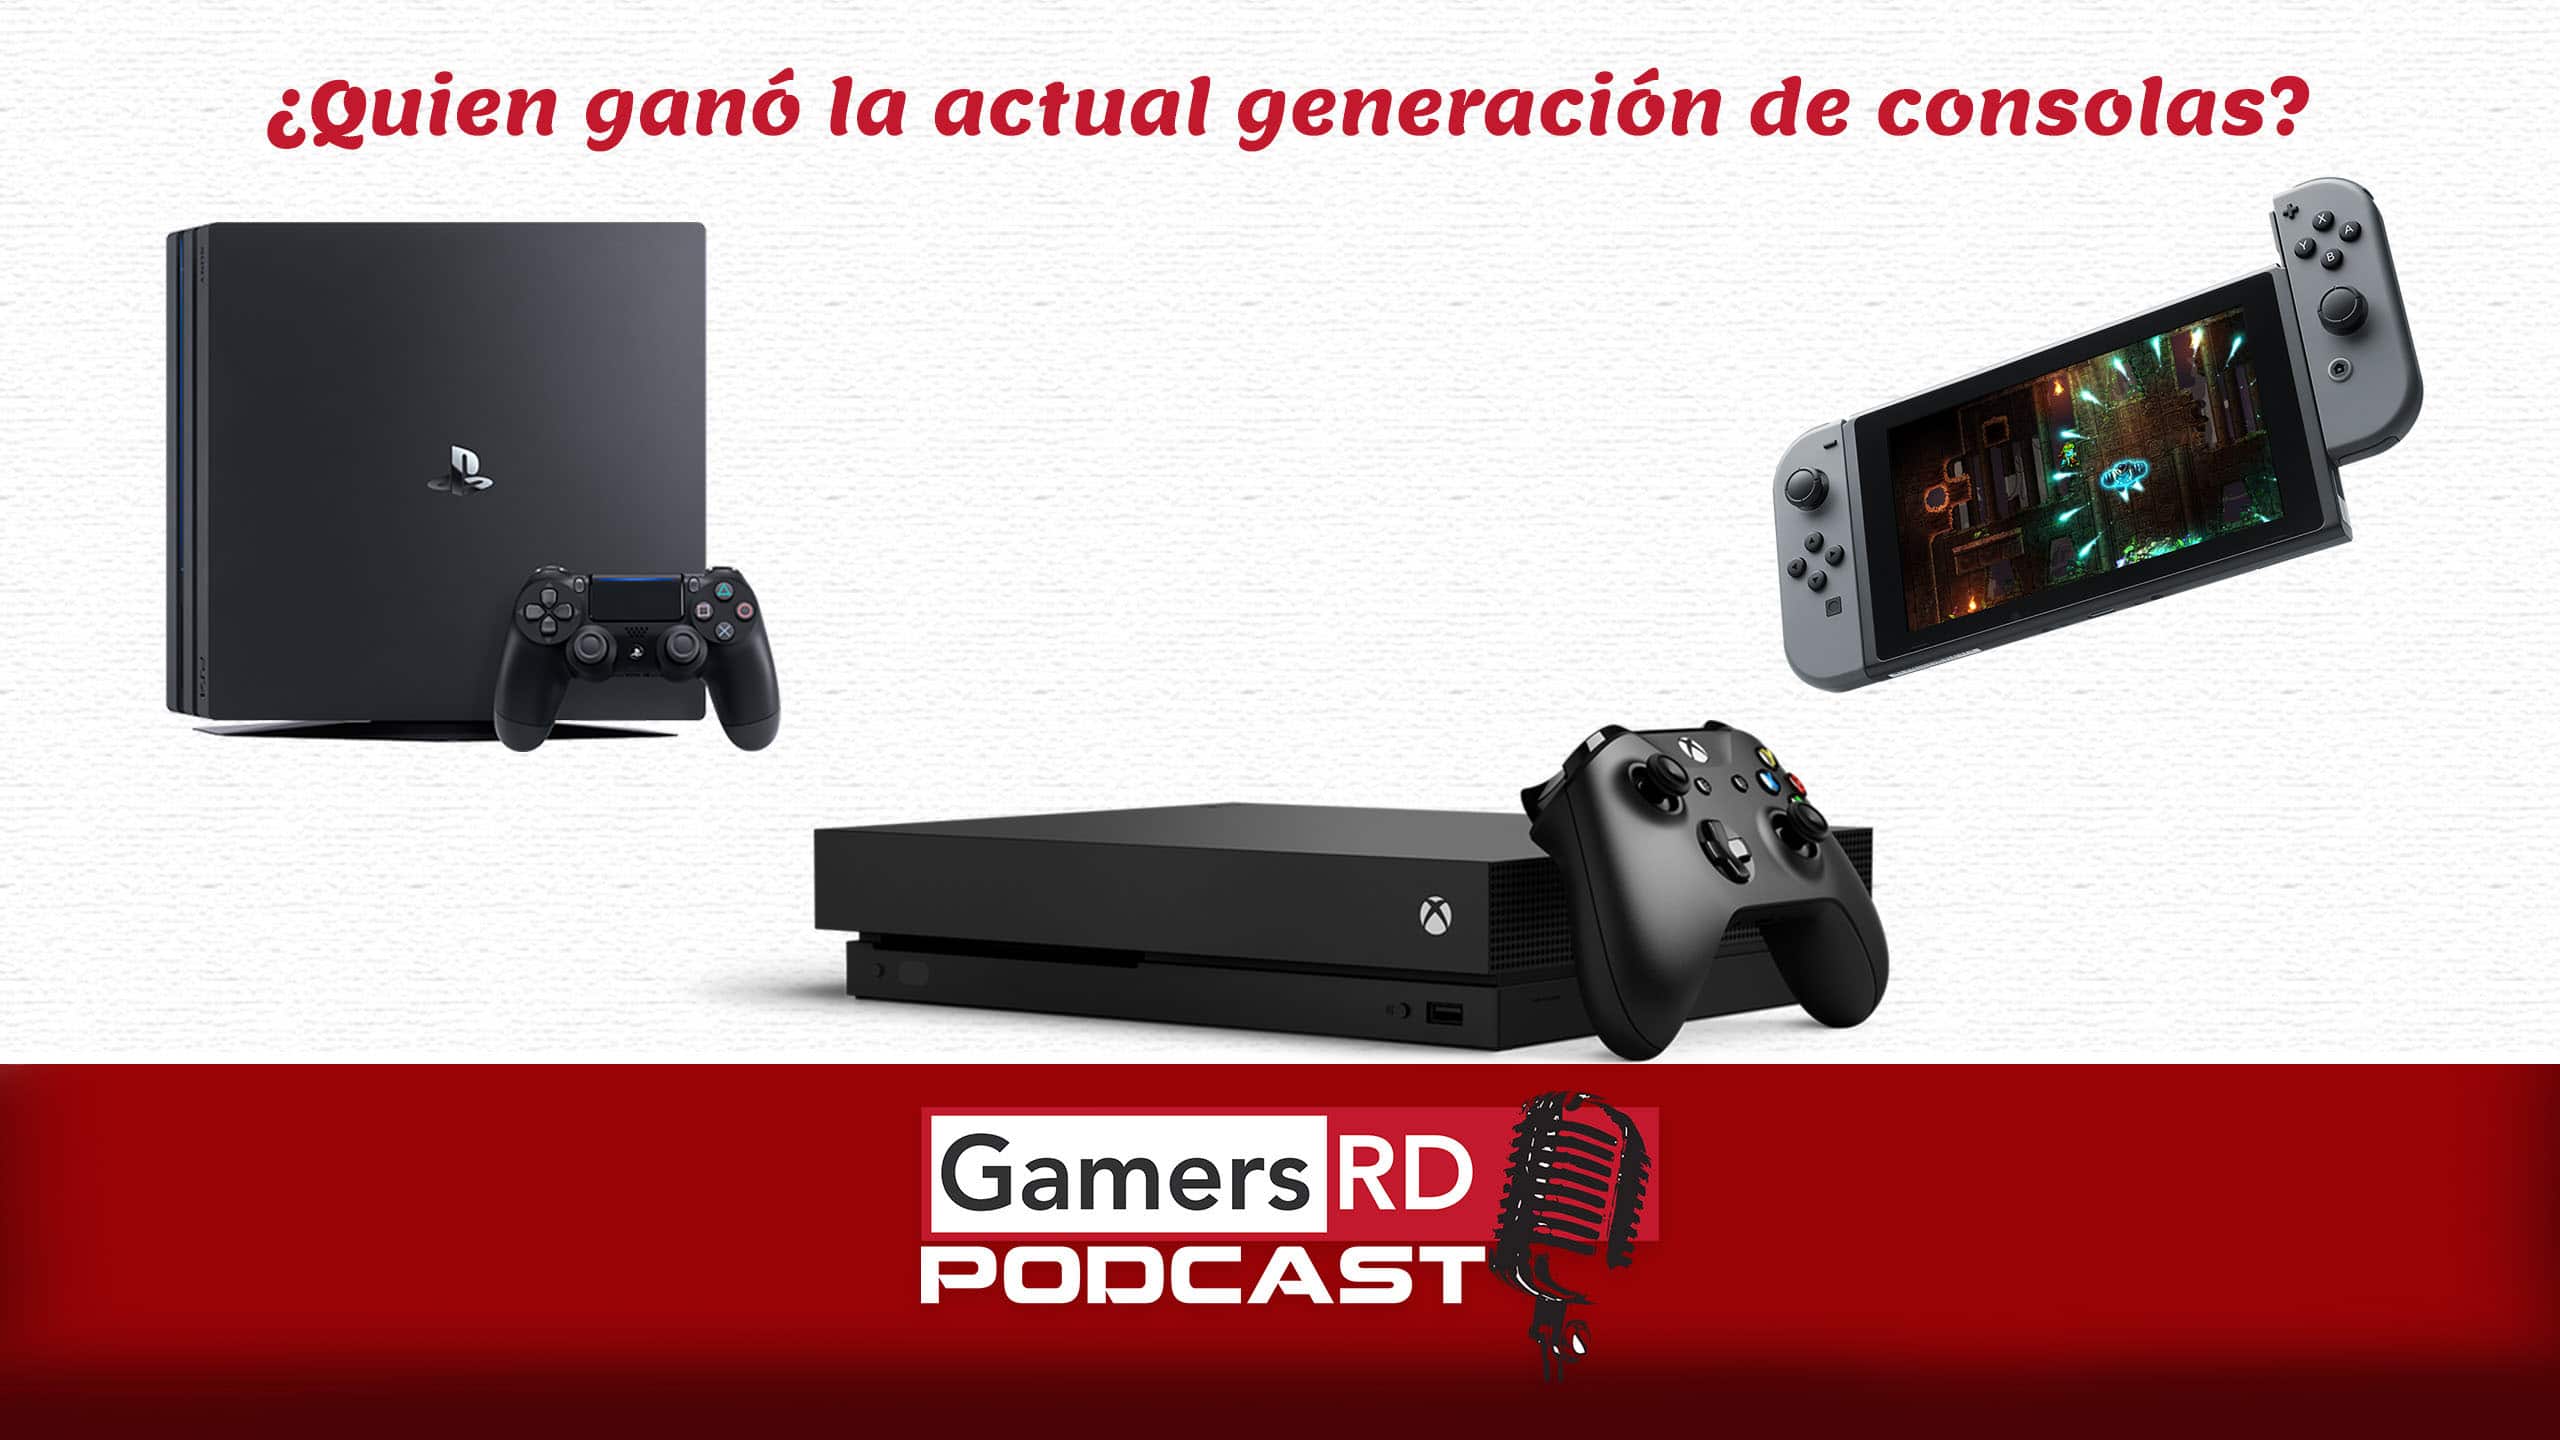 GamersRD Podcast #83 Analizamos quien ganó la actual generación de consolas, PS4, Xbox One , Nintendo Switch